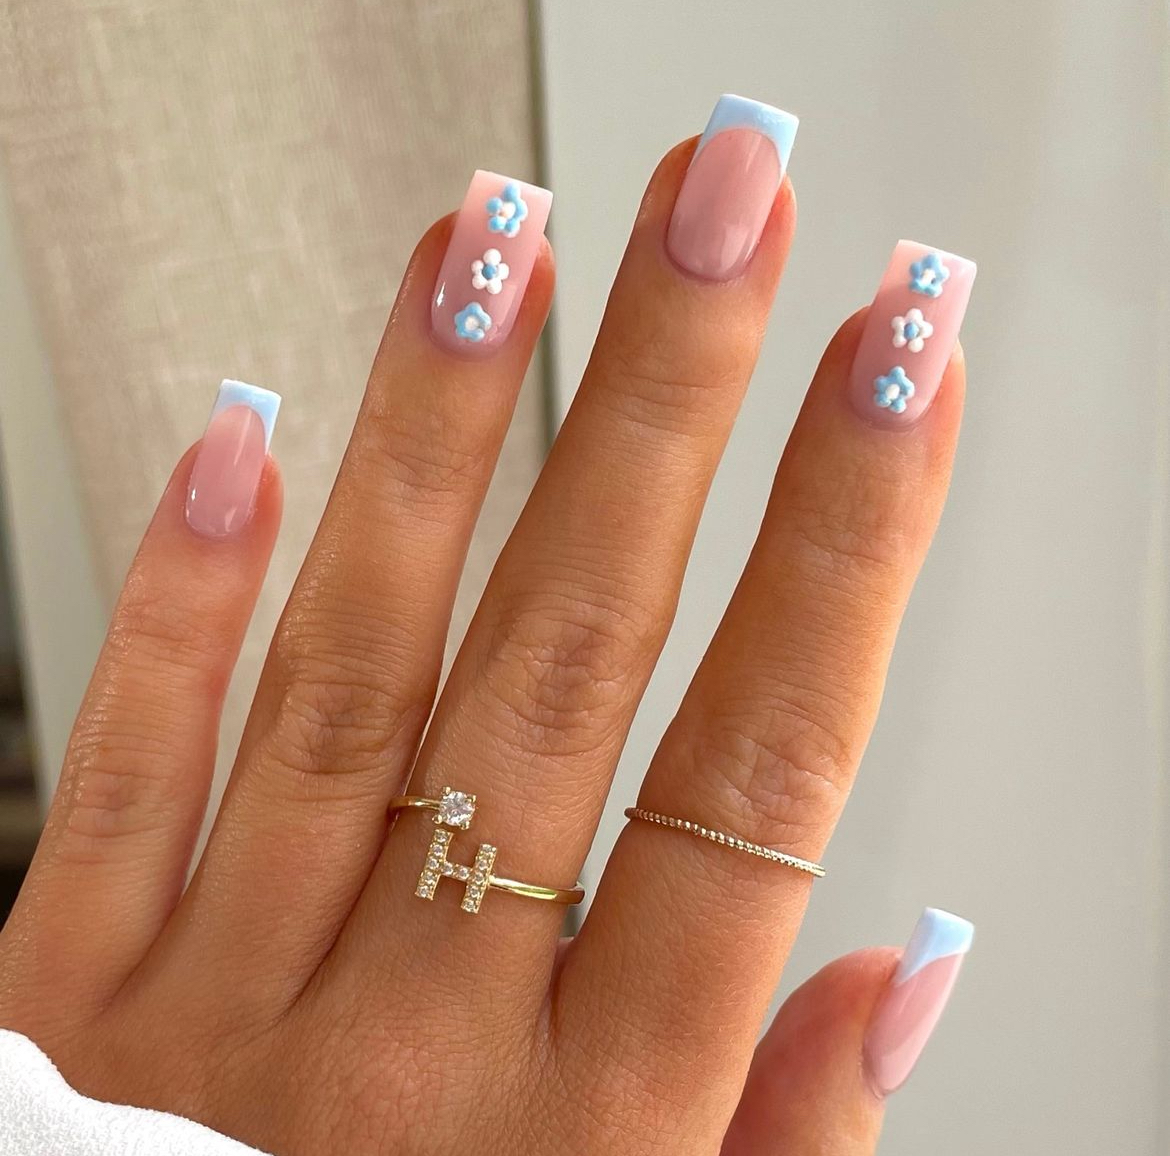 nails daisy design